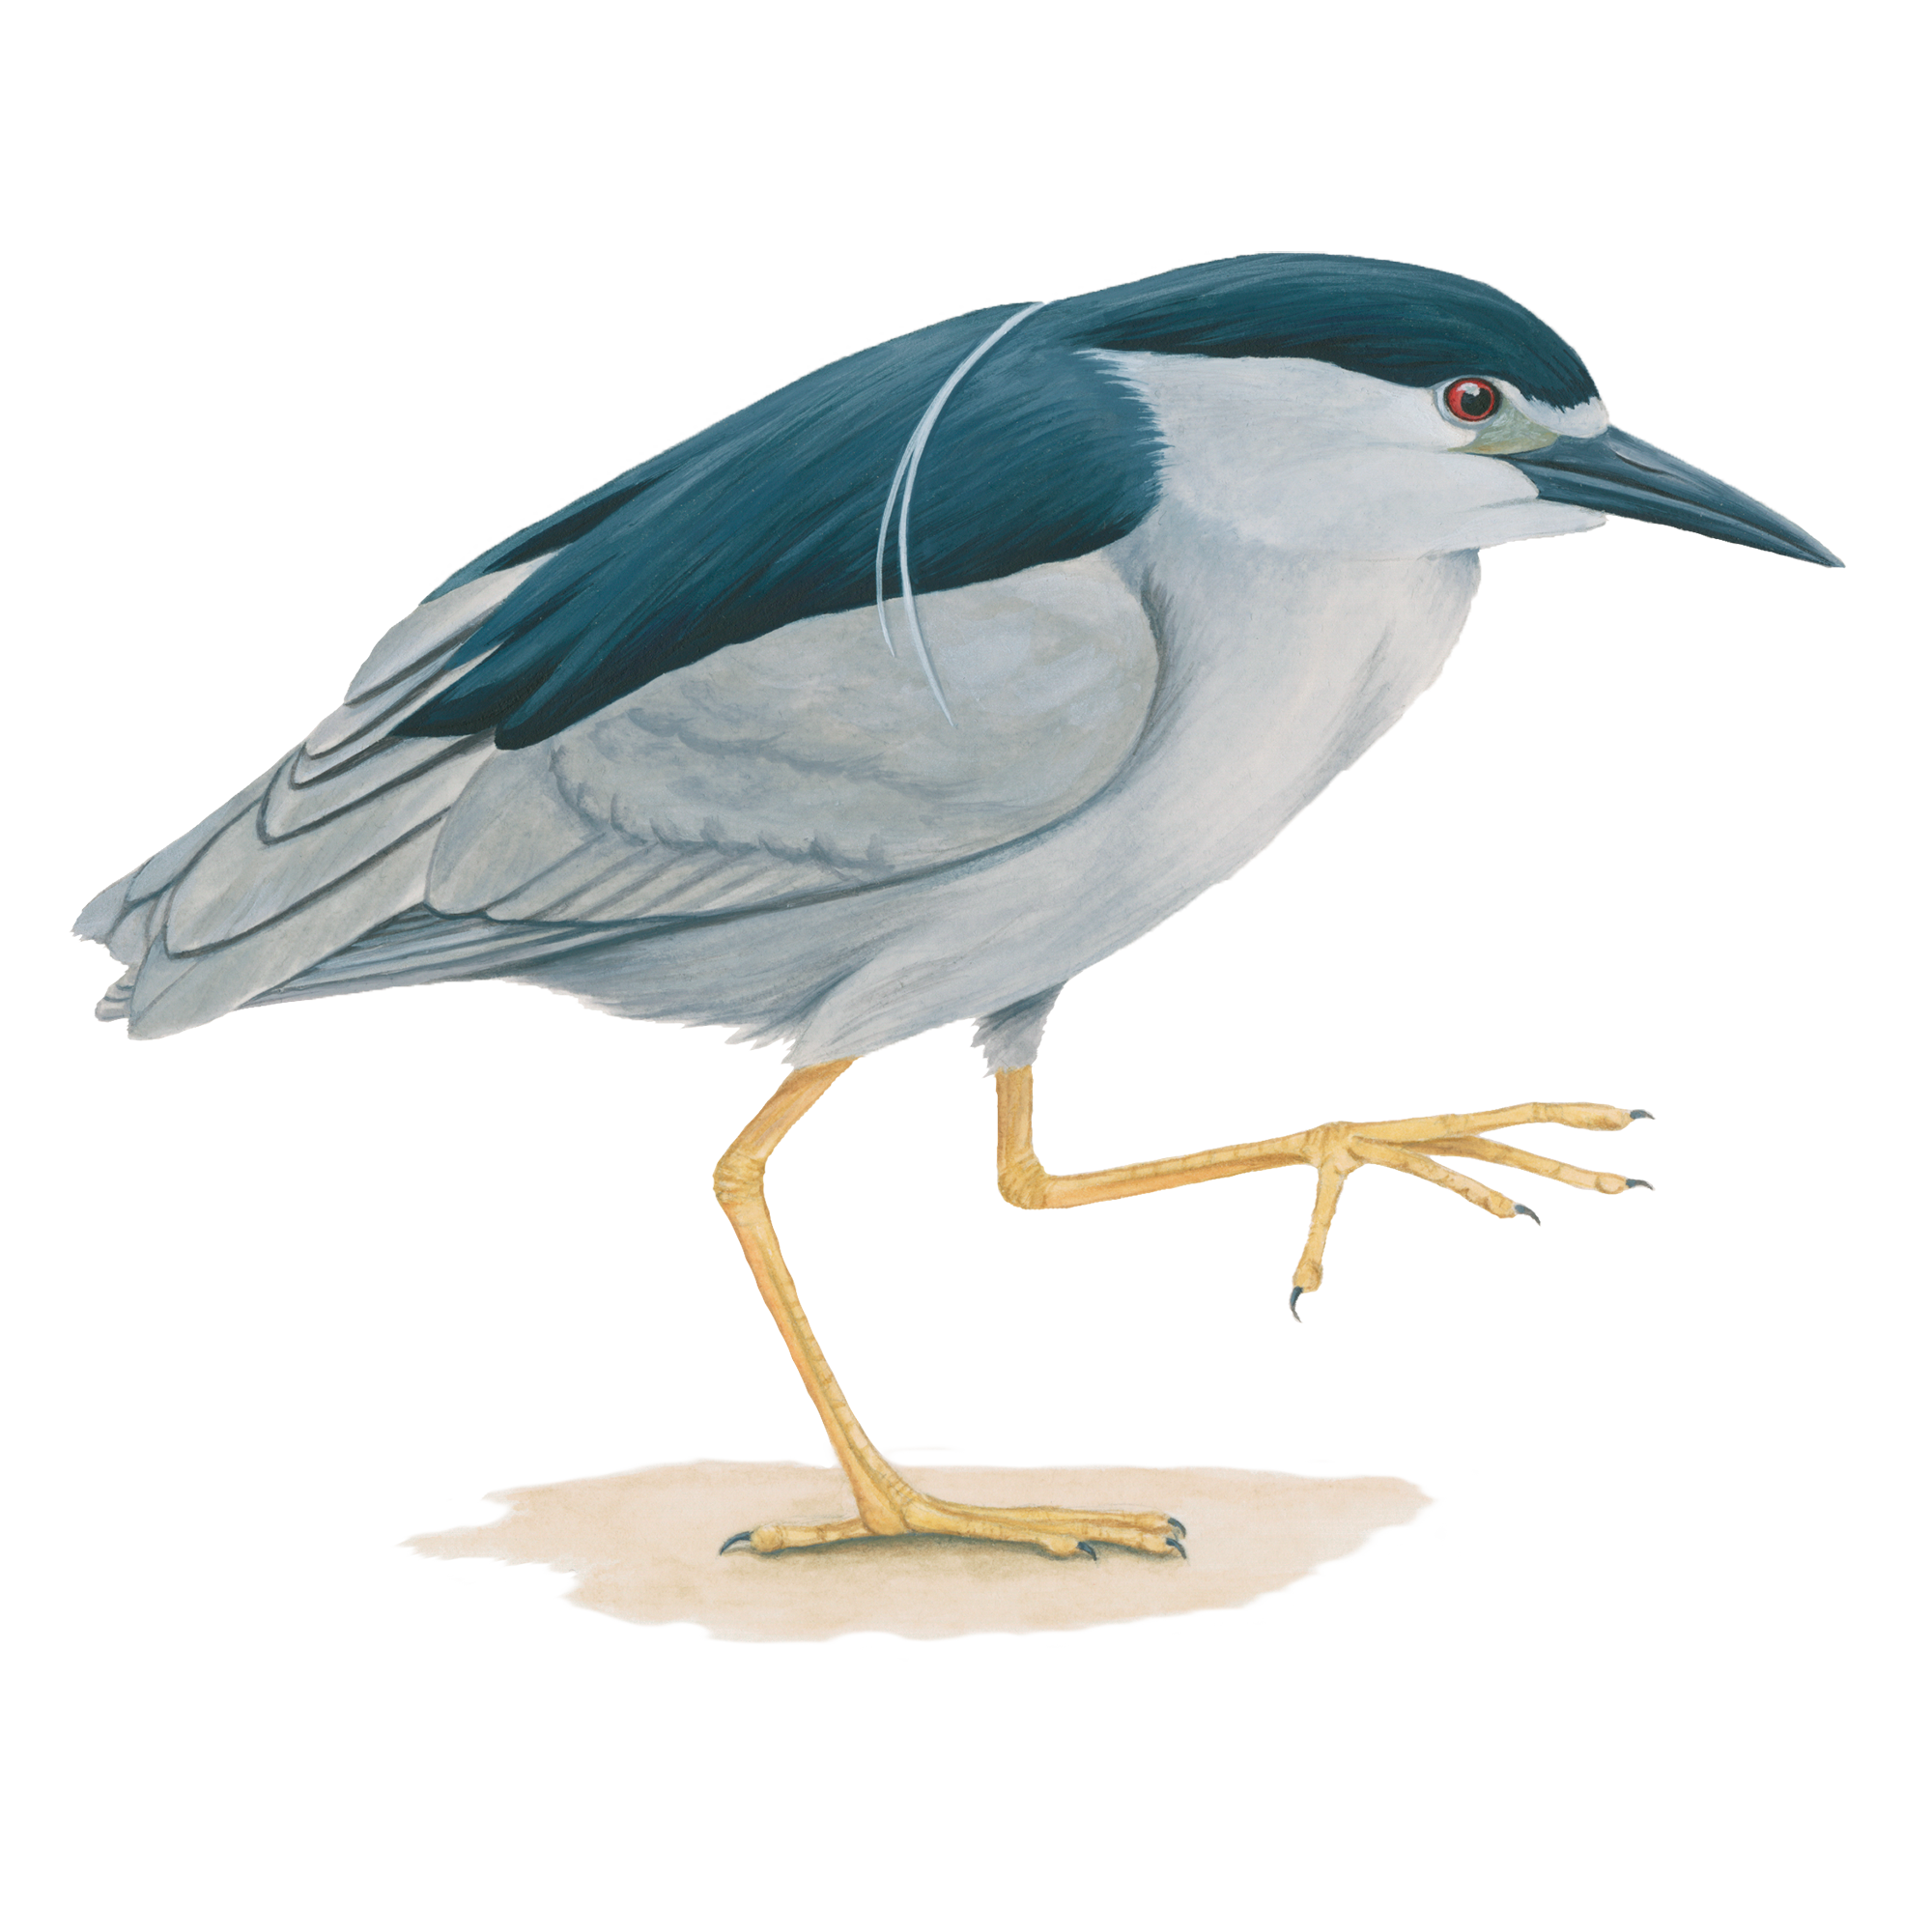 Heron PNG Image